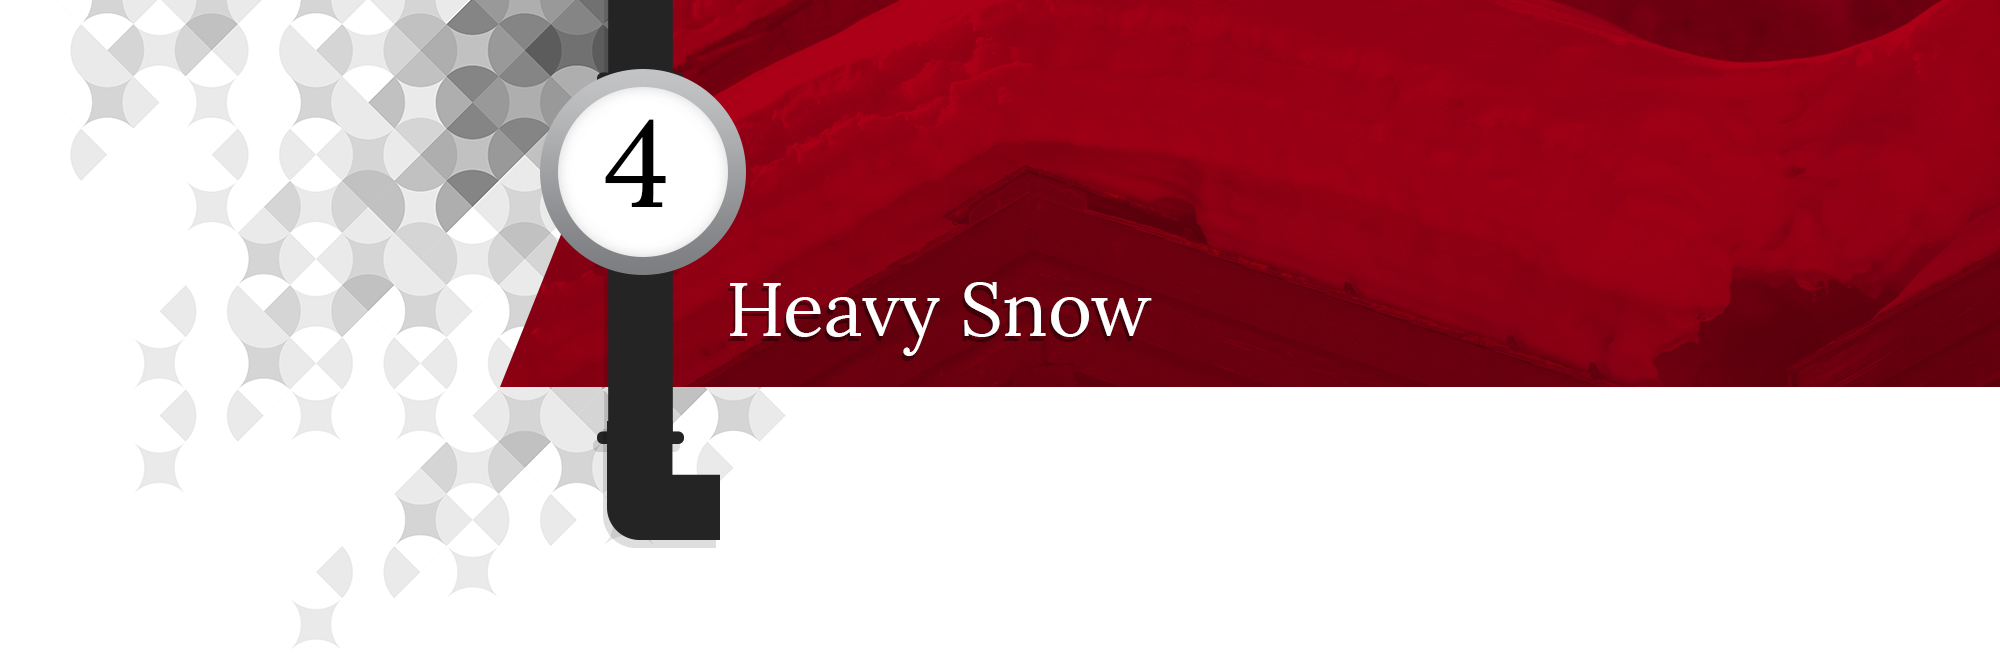 Heavy-Snow-5fbb4bf373e7f